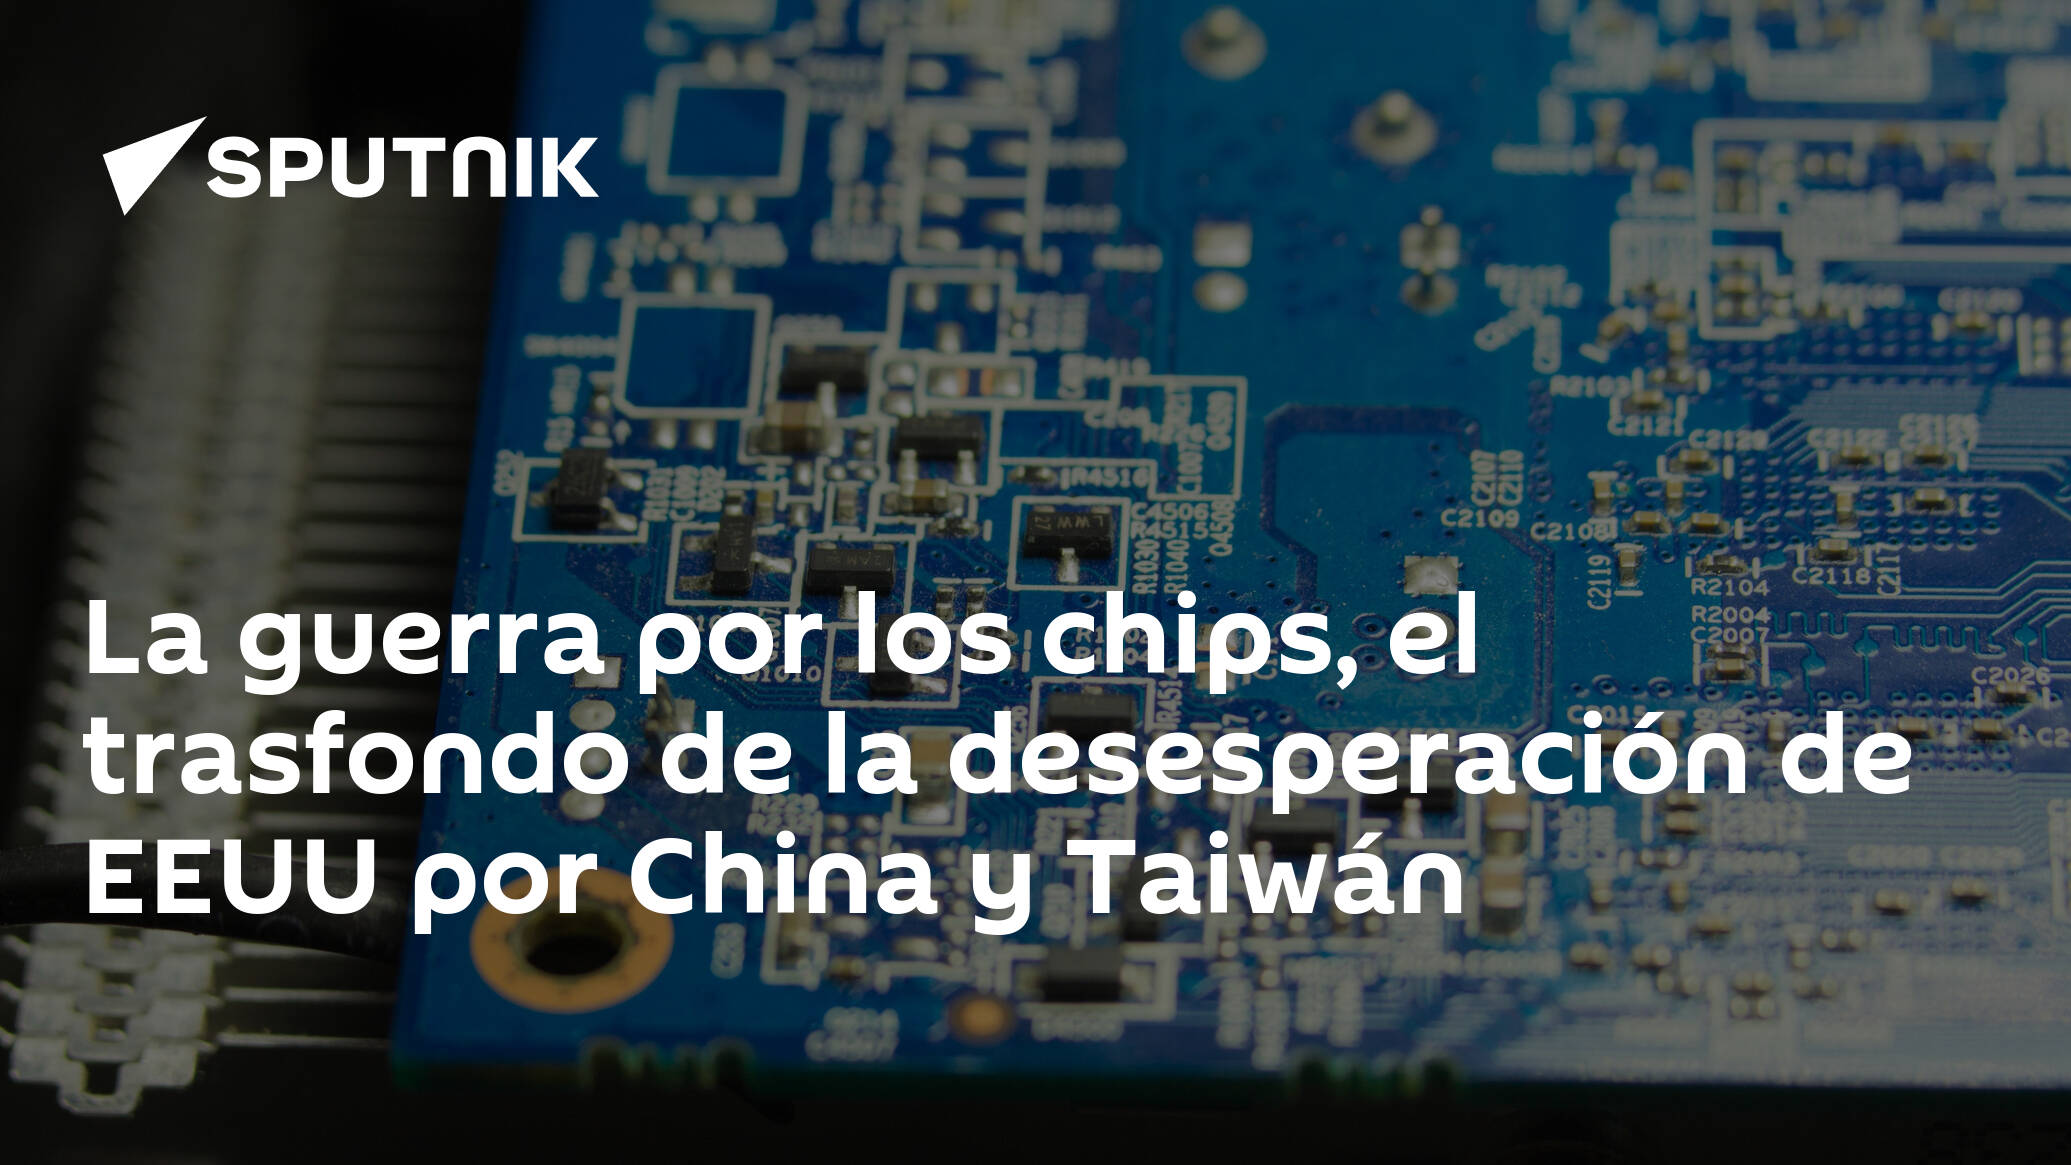 La guerra por los chips, el trasfondo de la desesperación de EEUU por China  y Taiwán - 08.08.2022, Sputnik Mundo